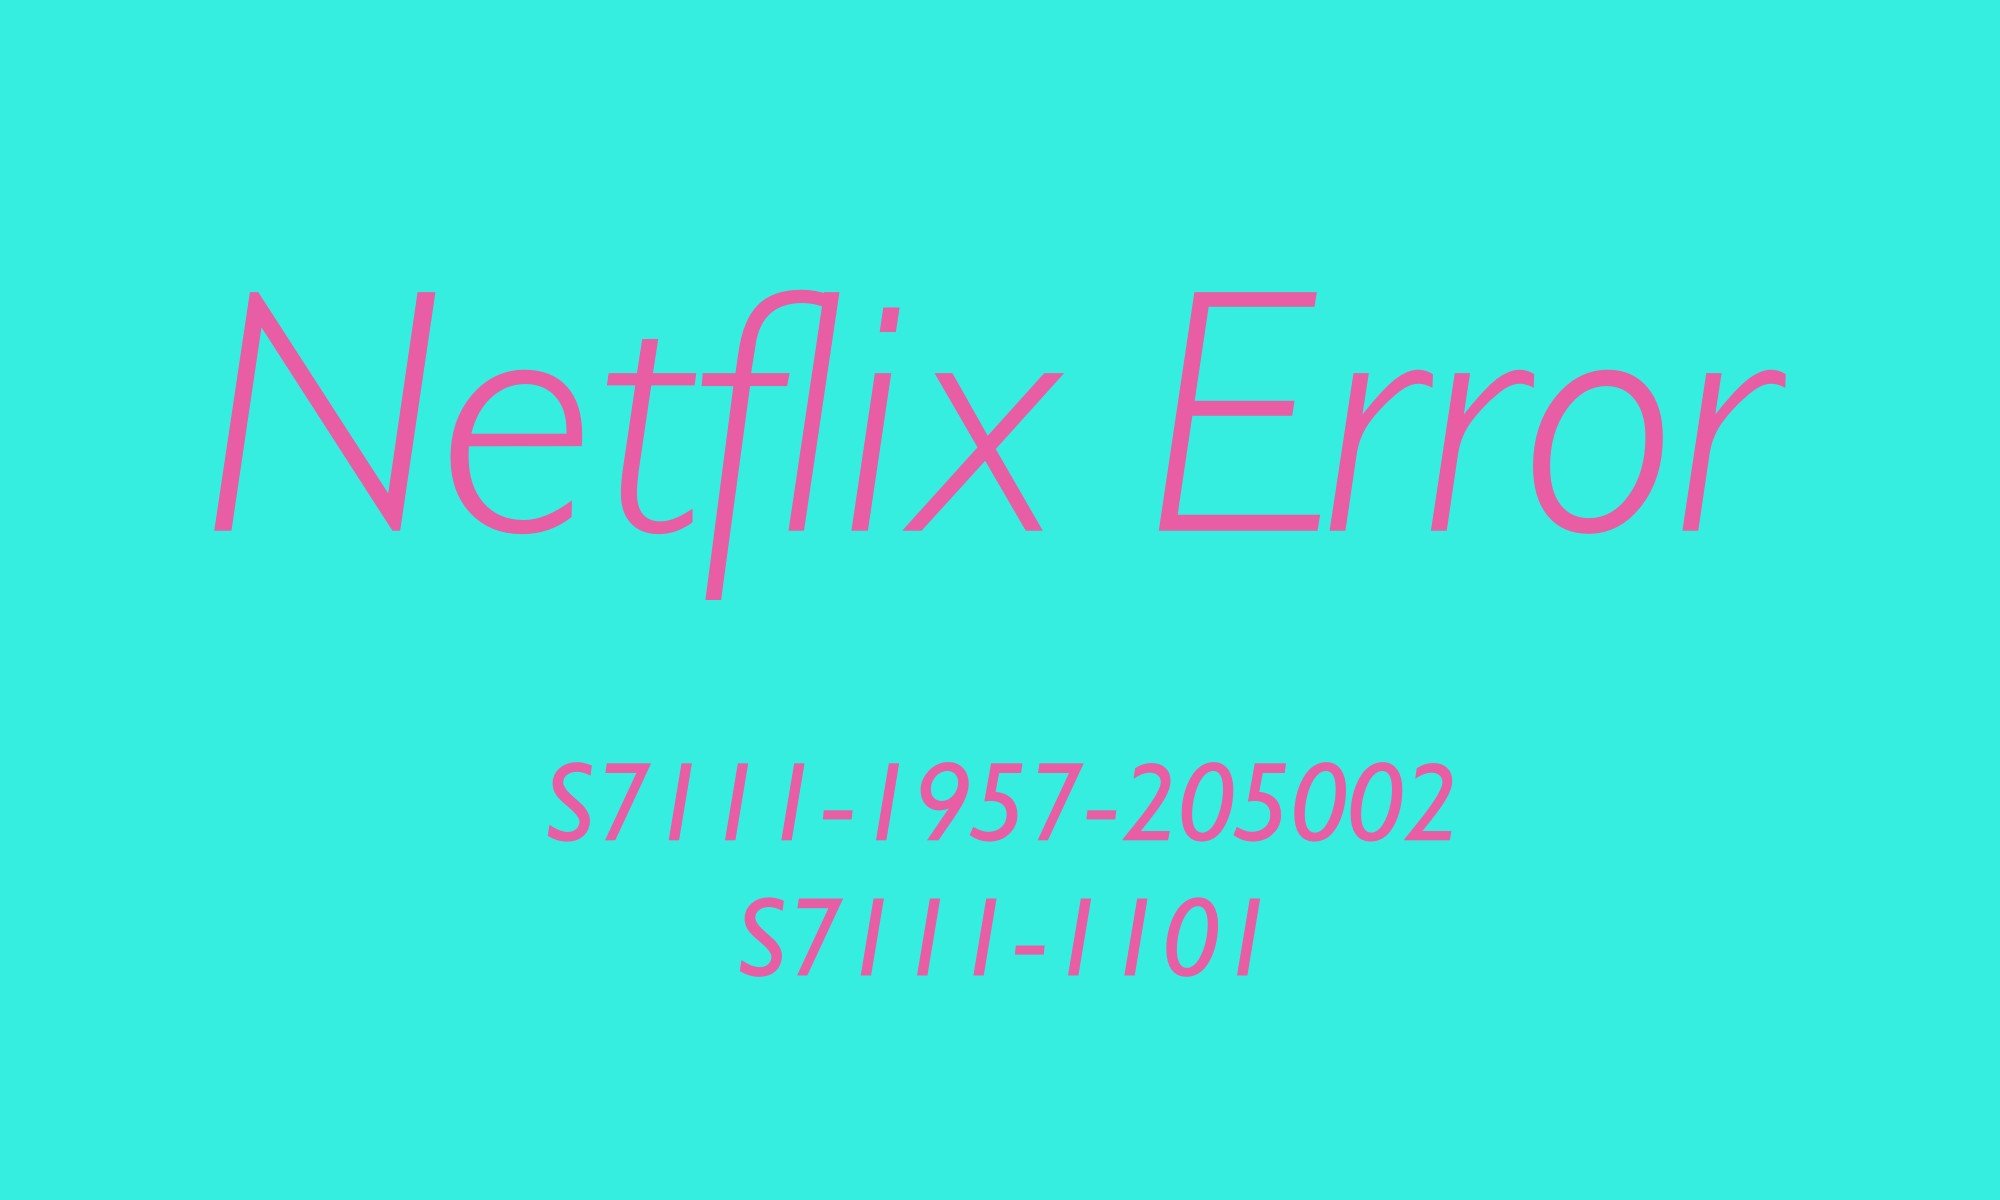 Netflix Error Code S7111